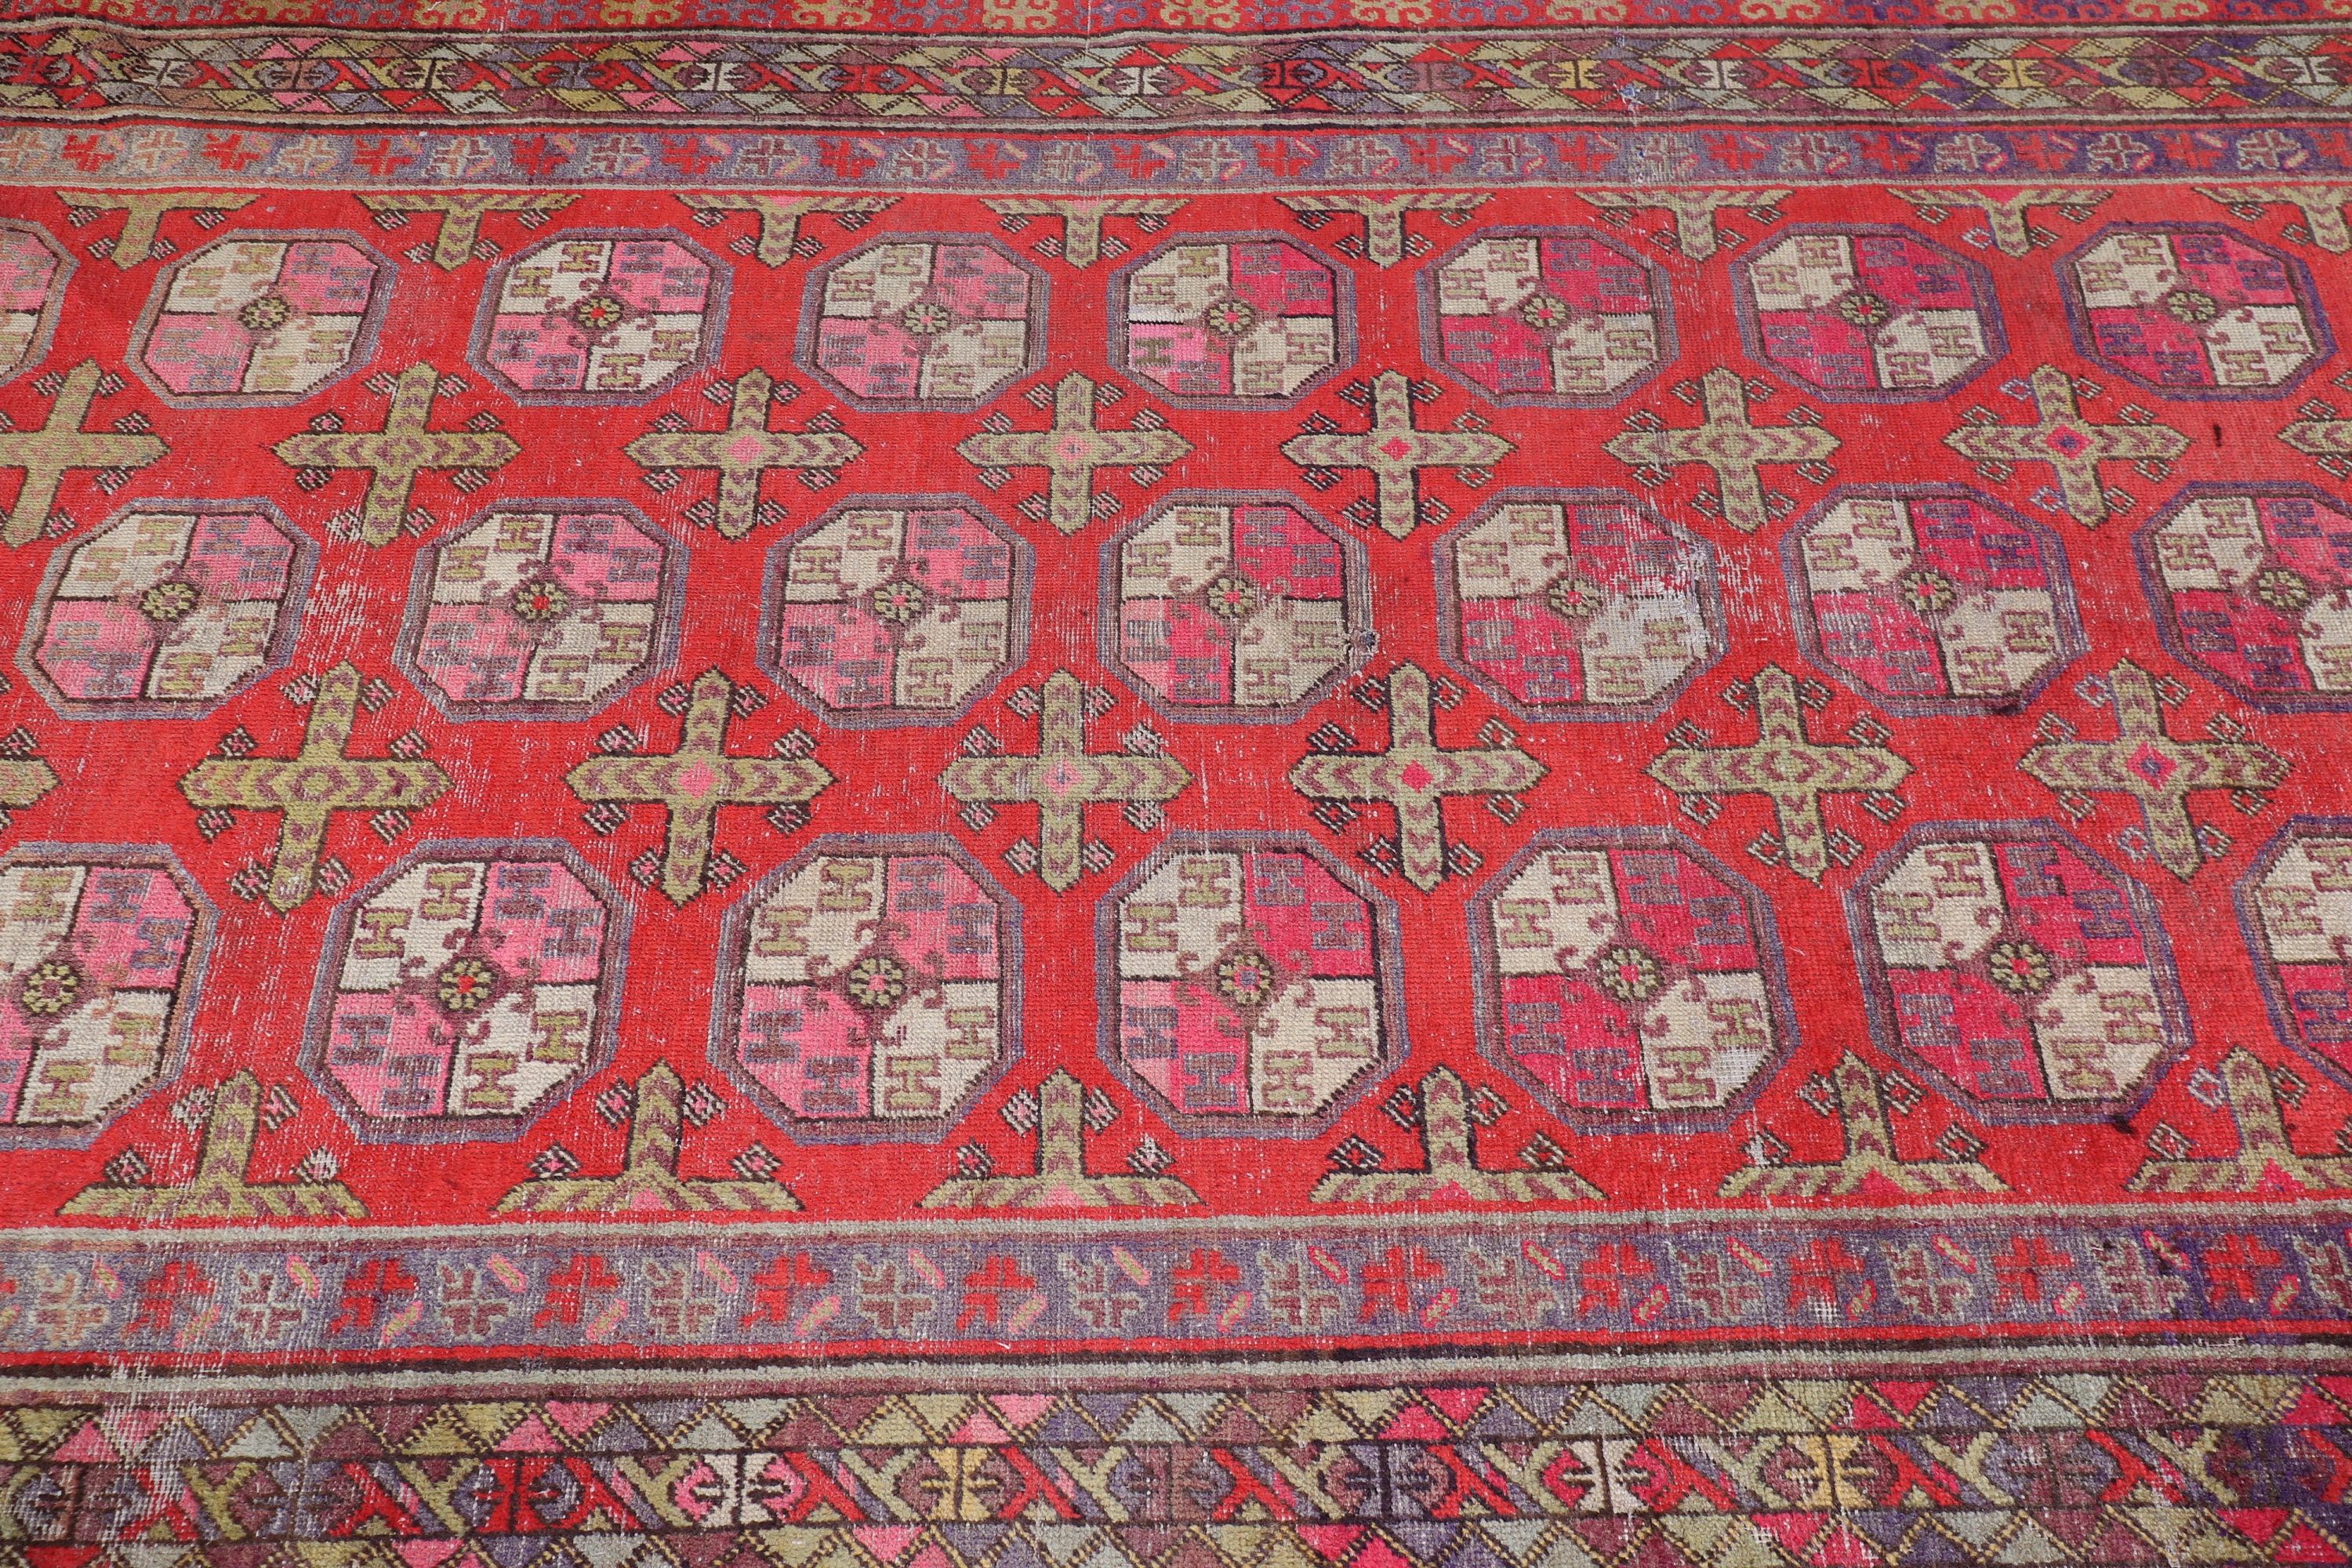 Hand Knotted Rugs, Bedroom Rug, 5.8x10.8 ft Large Rug, Salon Rug, Home Decor Rug, Turkish Rugs, Vintage Rug, Antique Rug, Red Oushak Rug